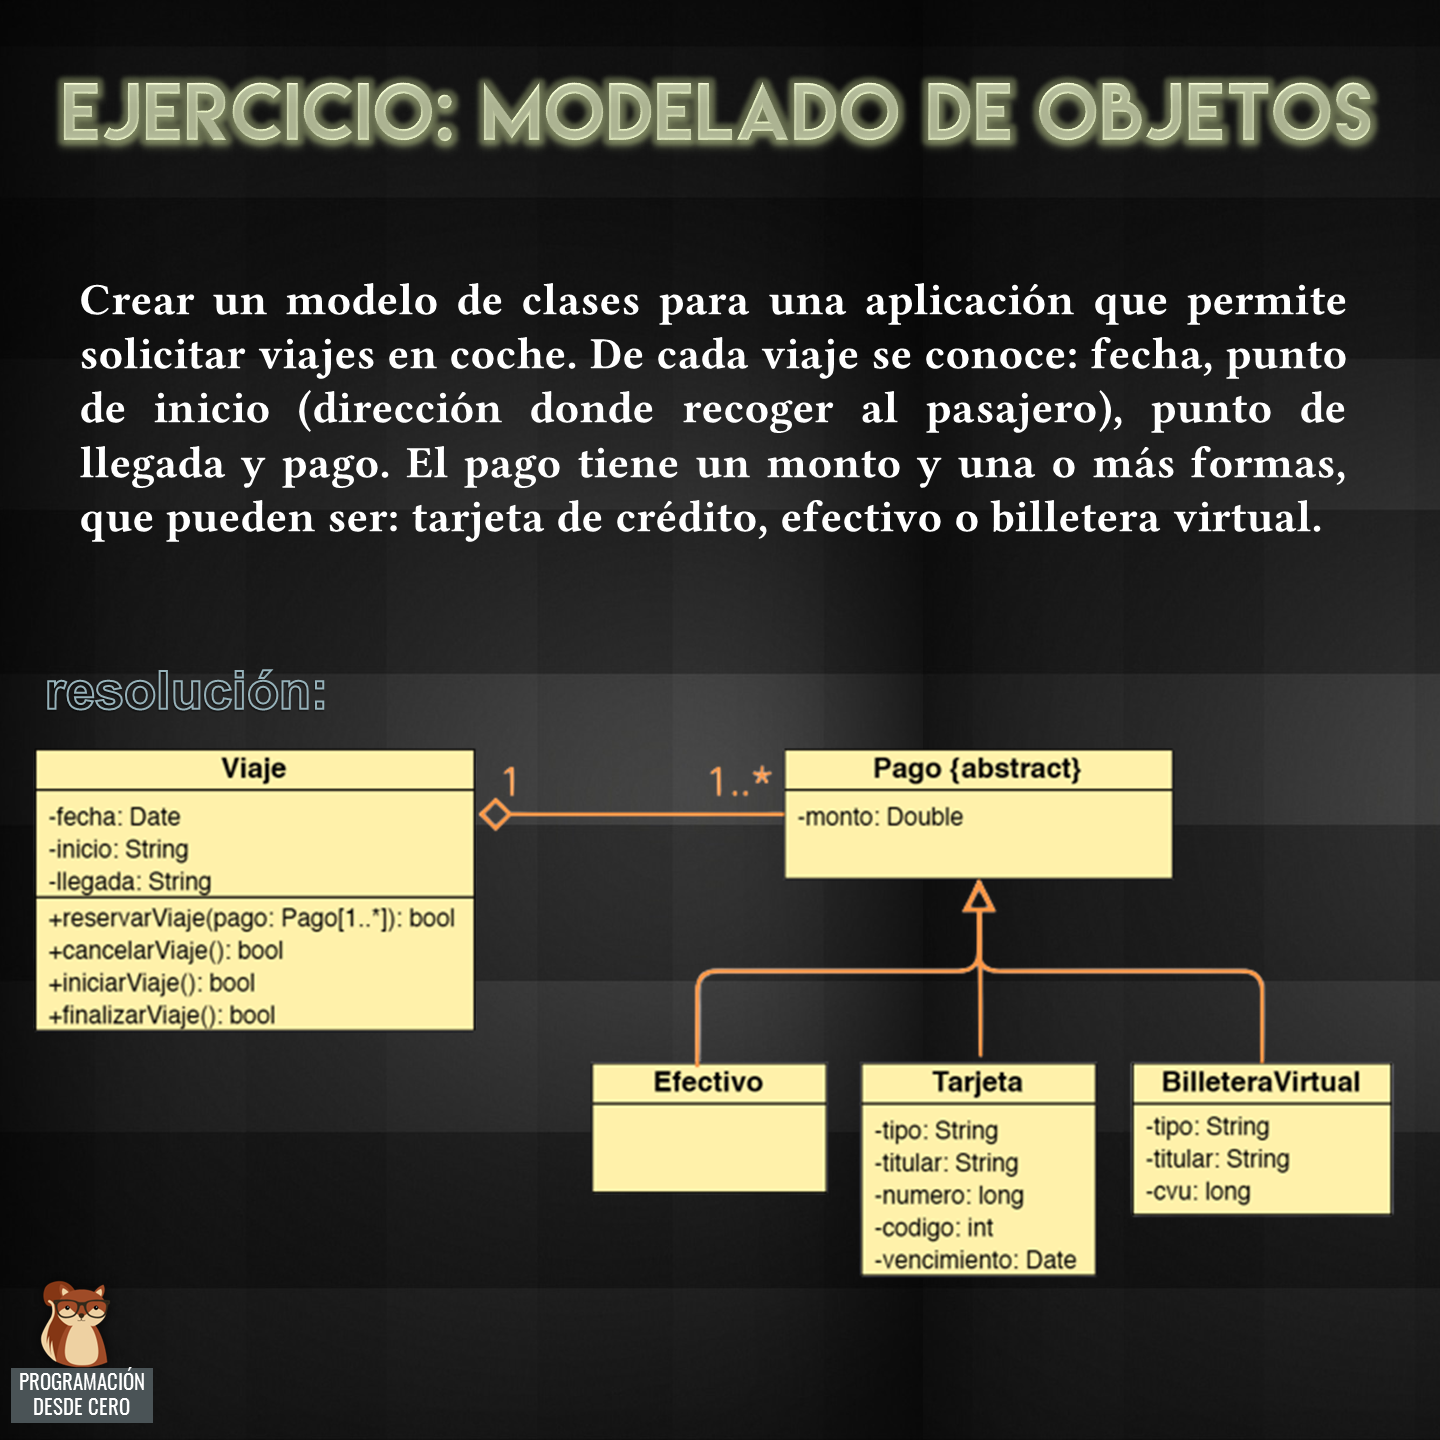 Ejercicio de modelado de objetos, con UML